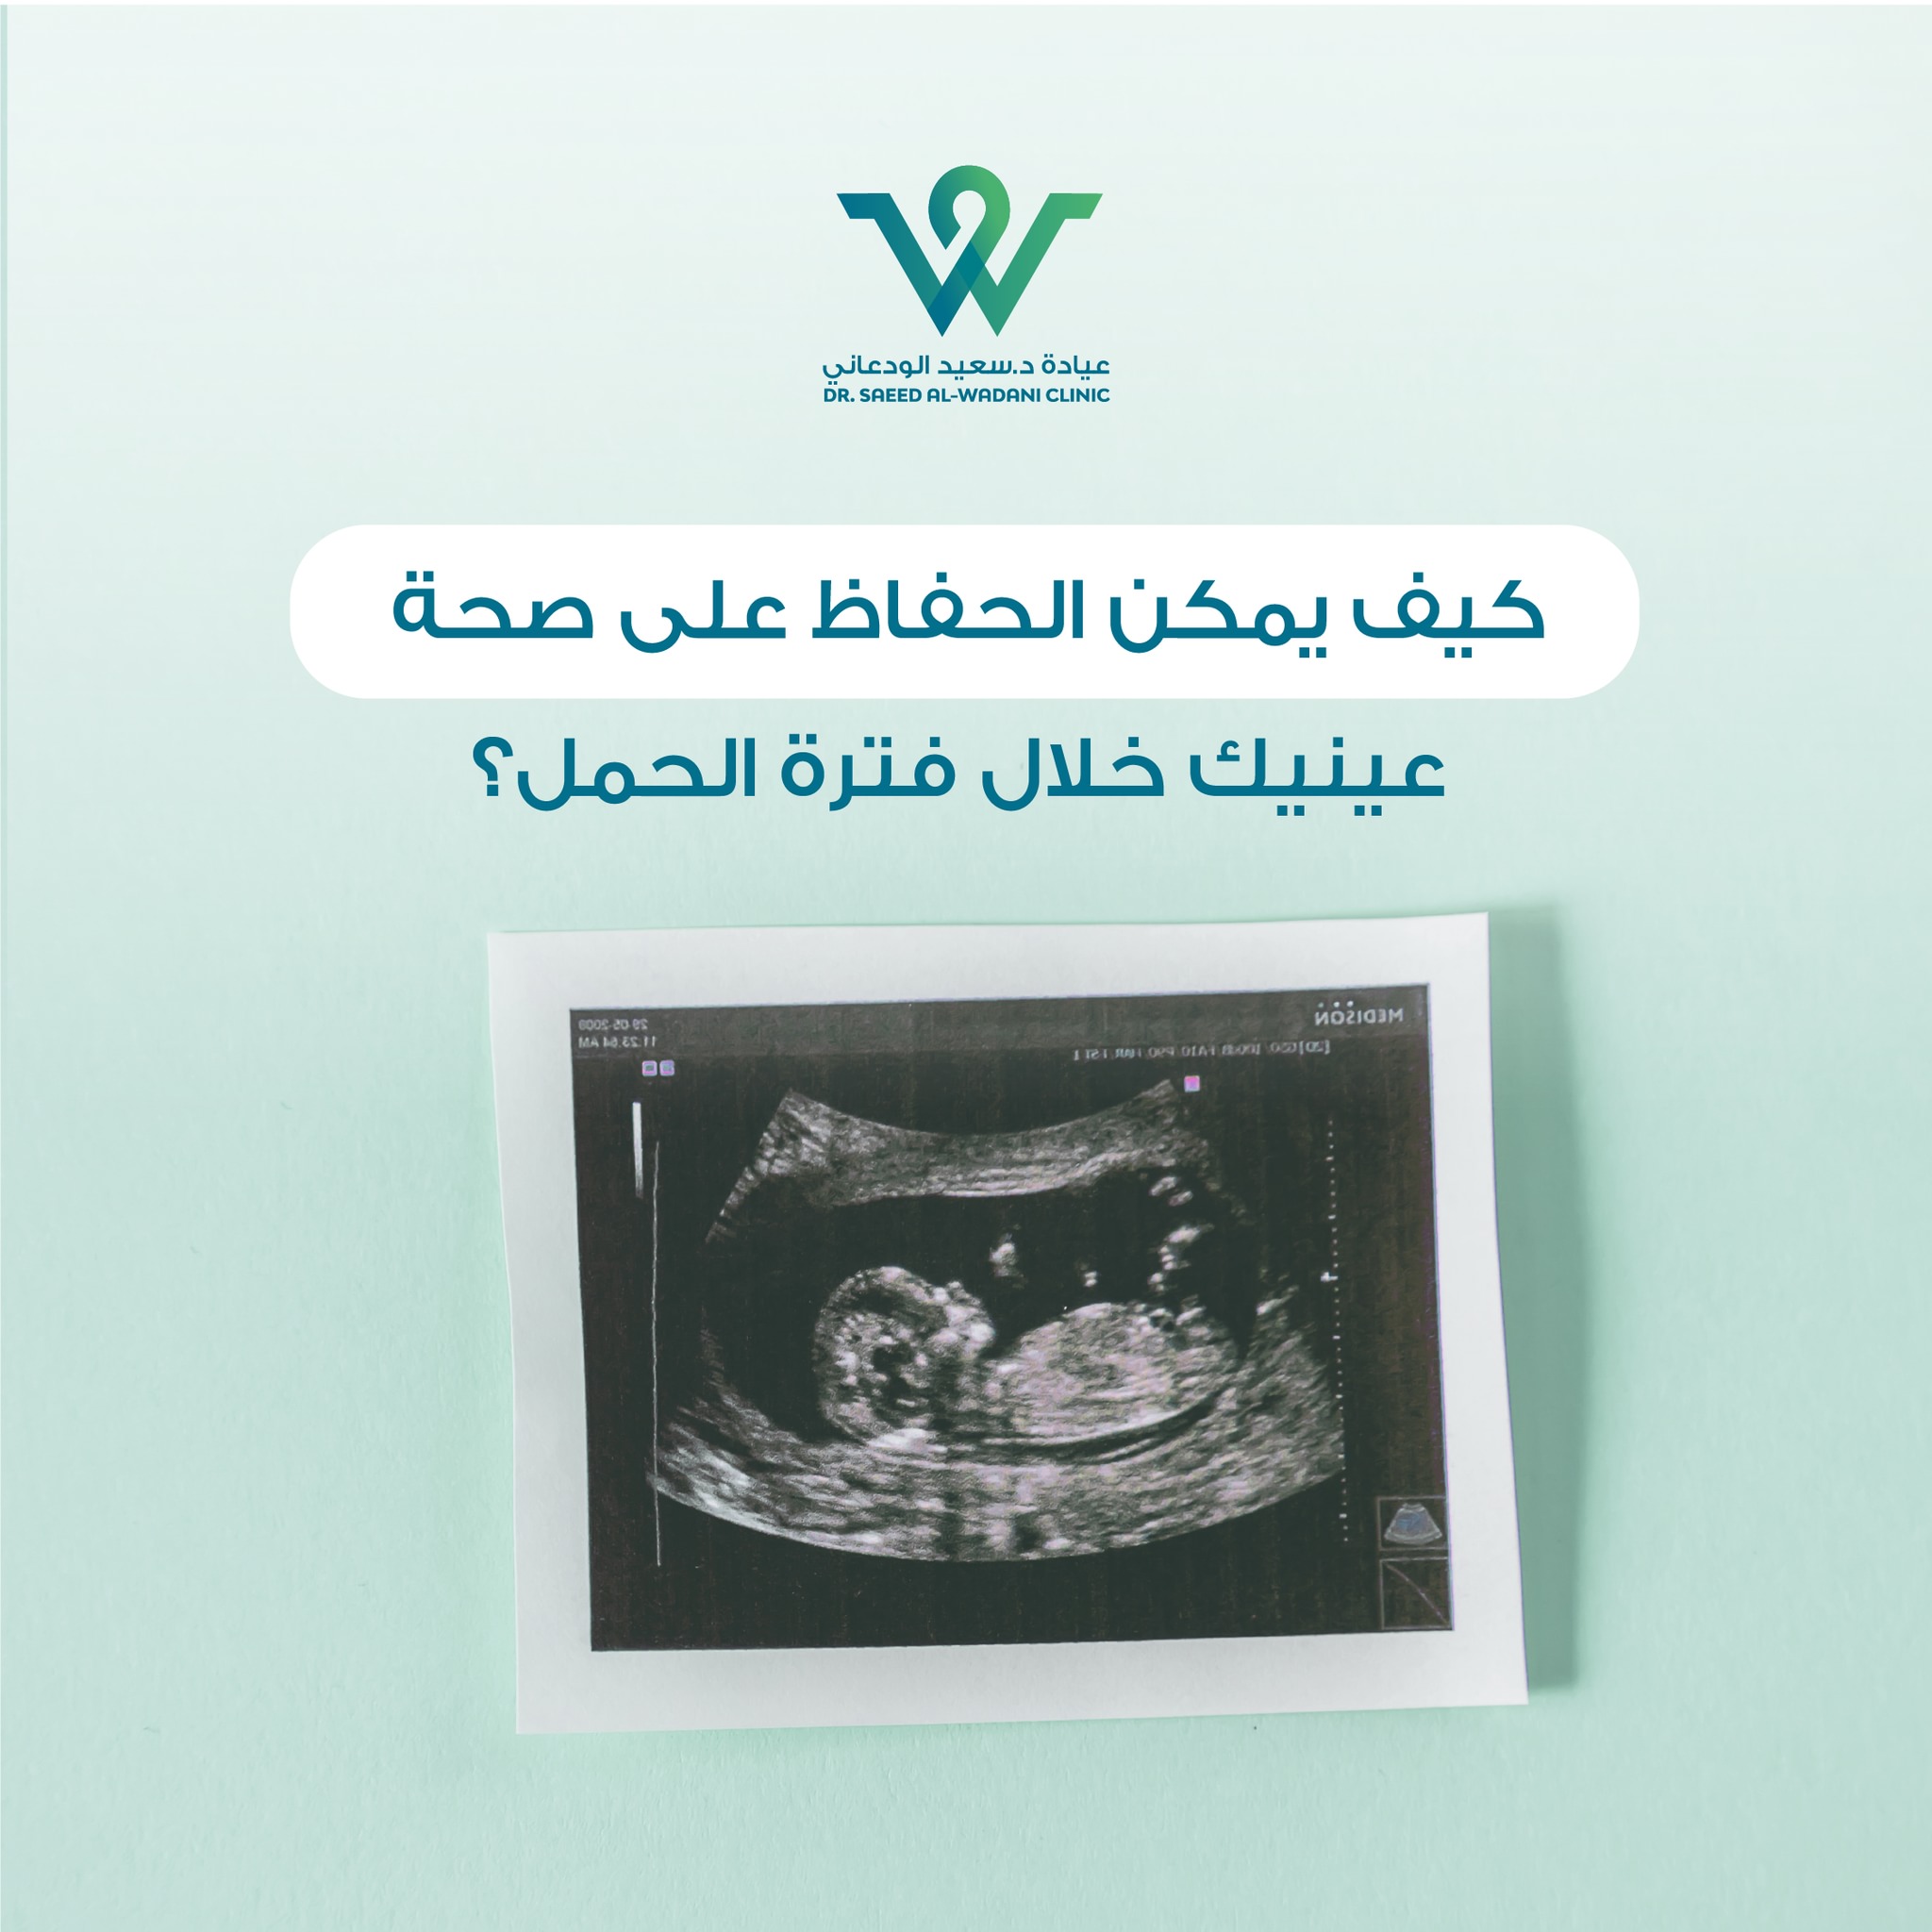 صحة العيون خلال الحمل، تعتبر فترة الحمل واحدة من أكثر الفترات تحديًا لصحة العينين للمرأة الحامل. يمكن أن تتعرض العينان للعديد من المشاكل والتغيرات أثناء الحمل